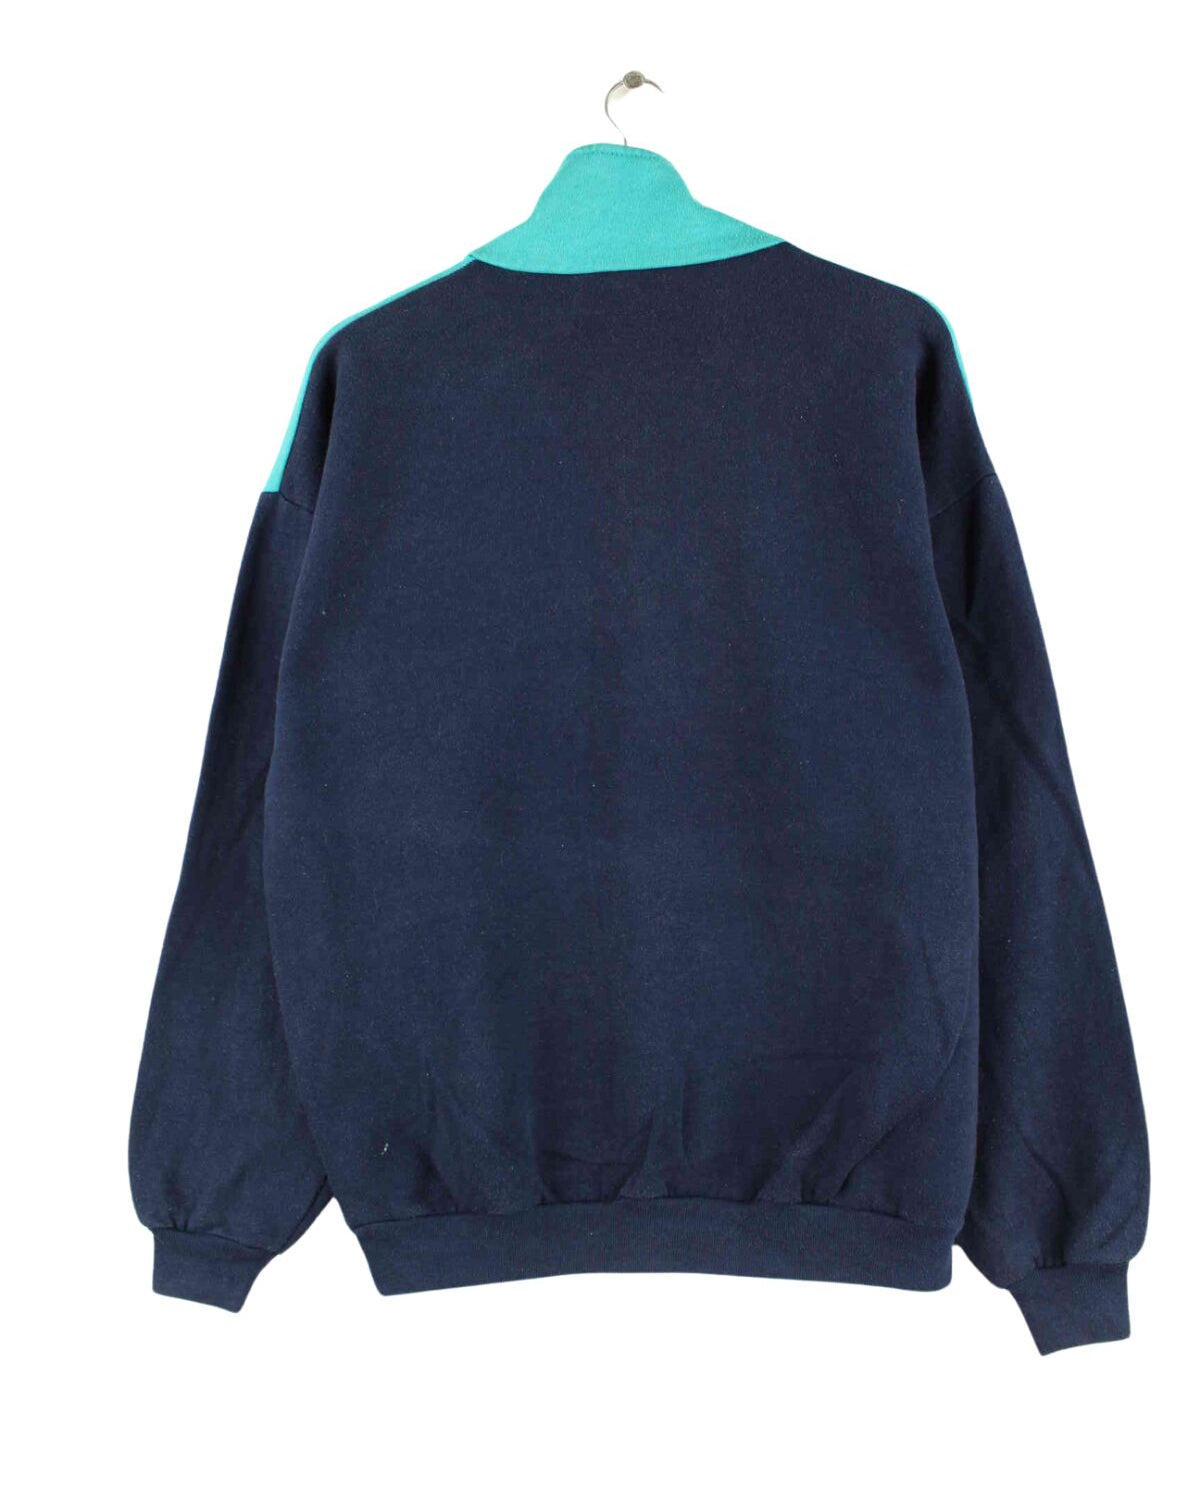 Adidas 80s Vintage Trefoil Print Half Zip Sweater Blau M (back image)